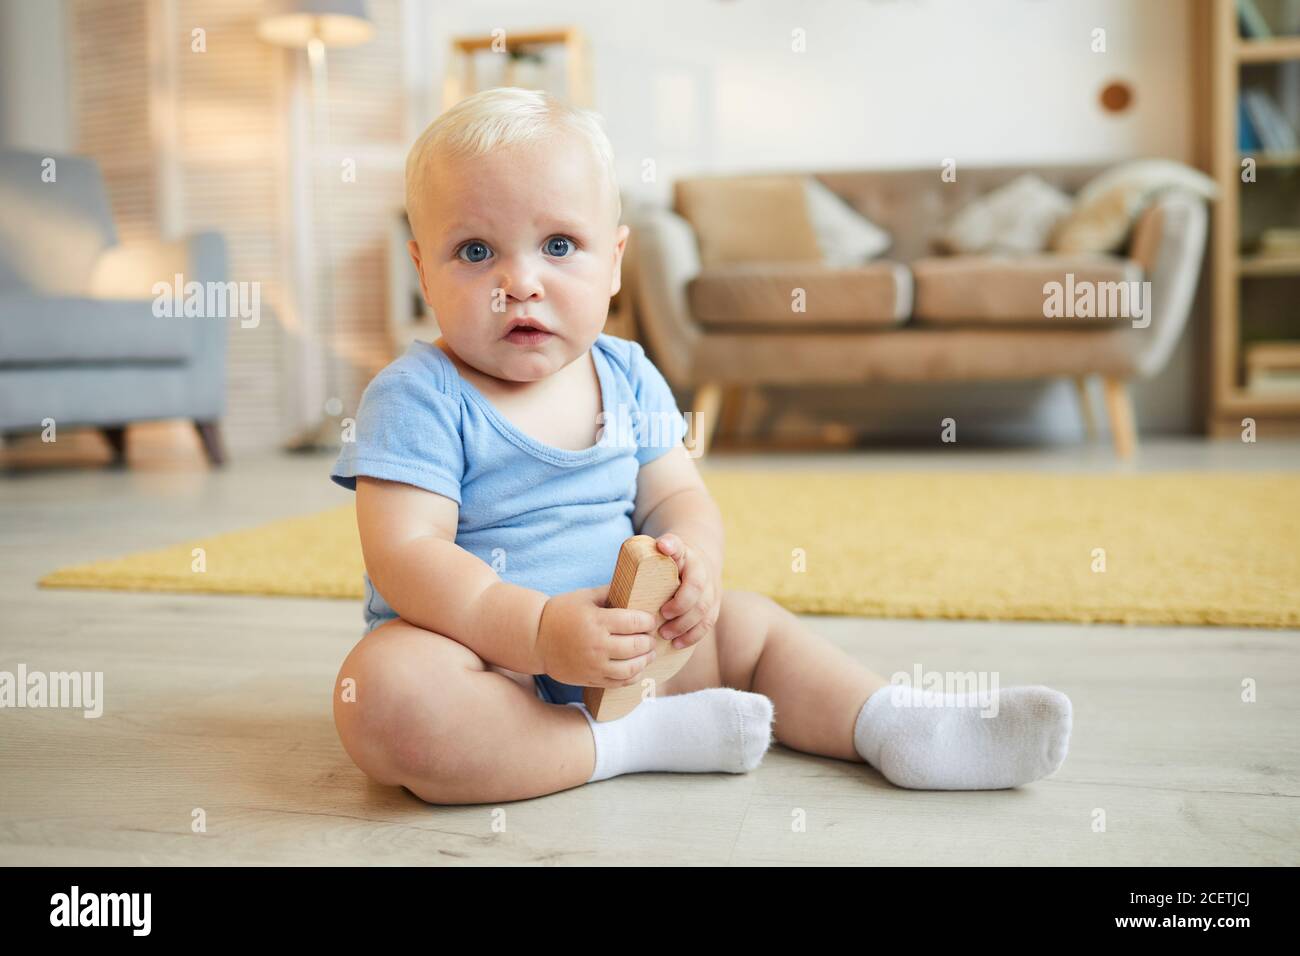 Image horizontale du corps de bébé mignon avec des cheveux blonds assis sur le sol dans le salon, regardant l'appareil photo, l'espace de copie Banque D'Images